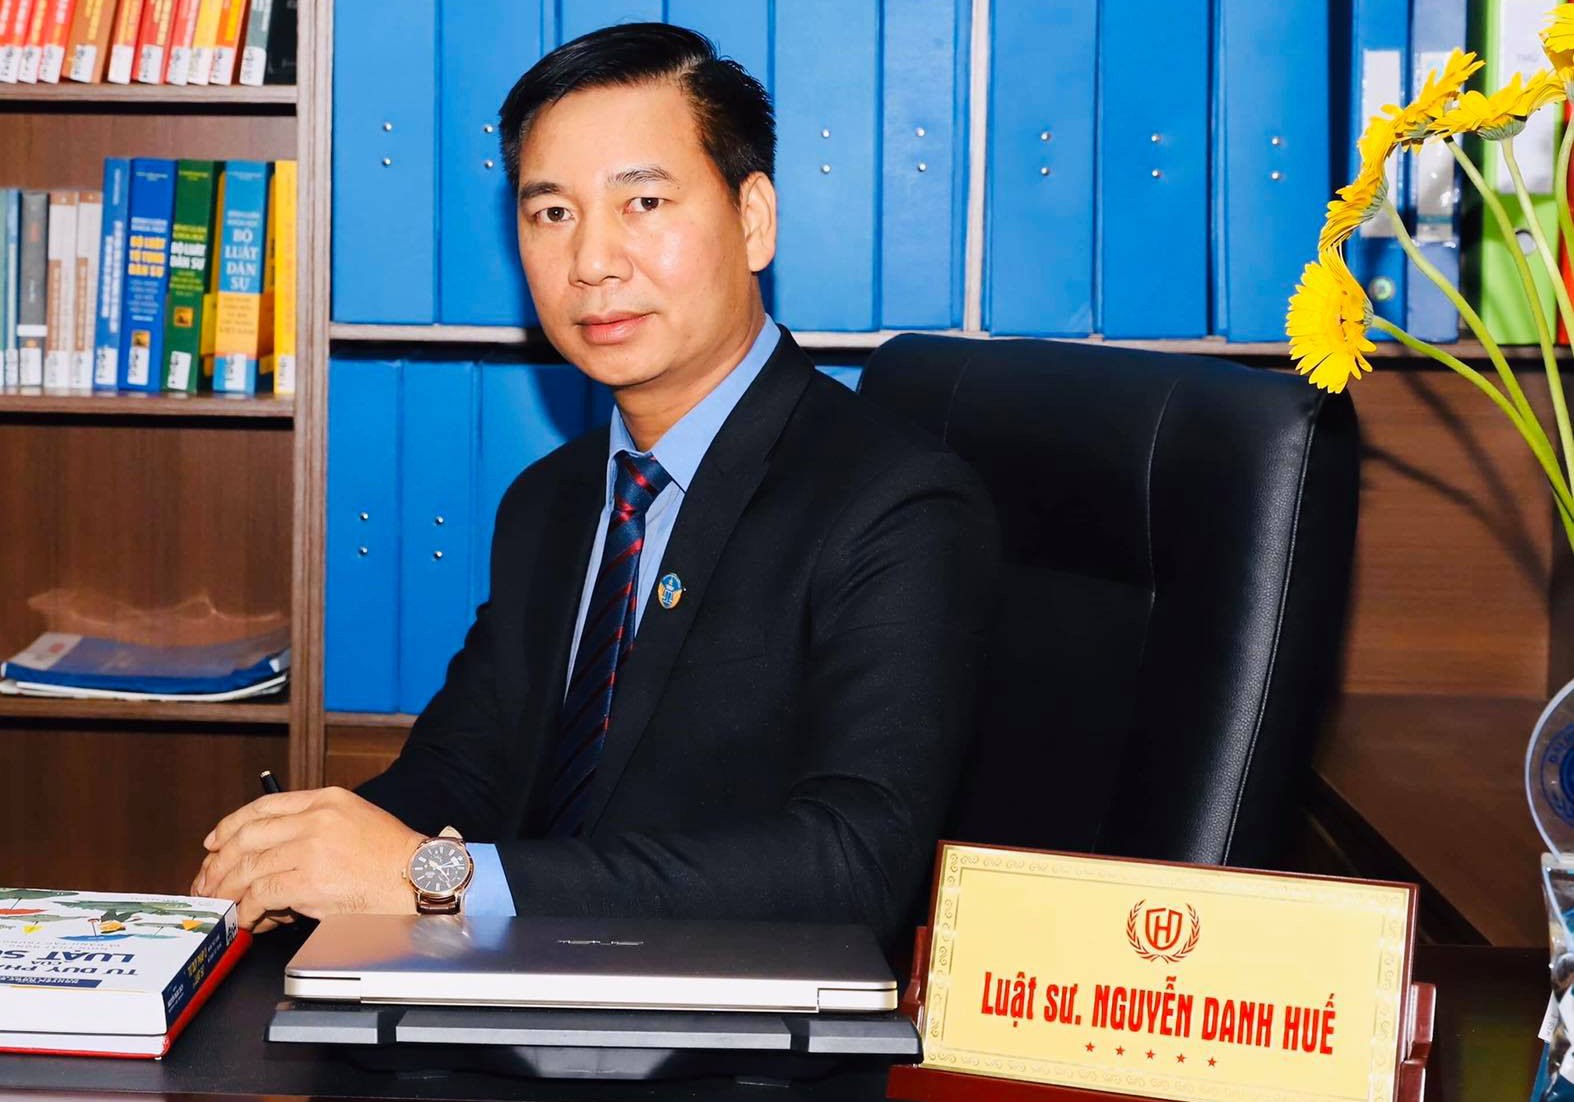 LS. Nguyễn Danh Huế, Chủ tịch HĐTV Công ty Luật Hừng Đông.